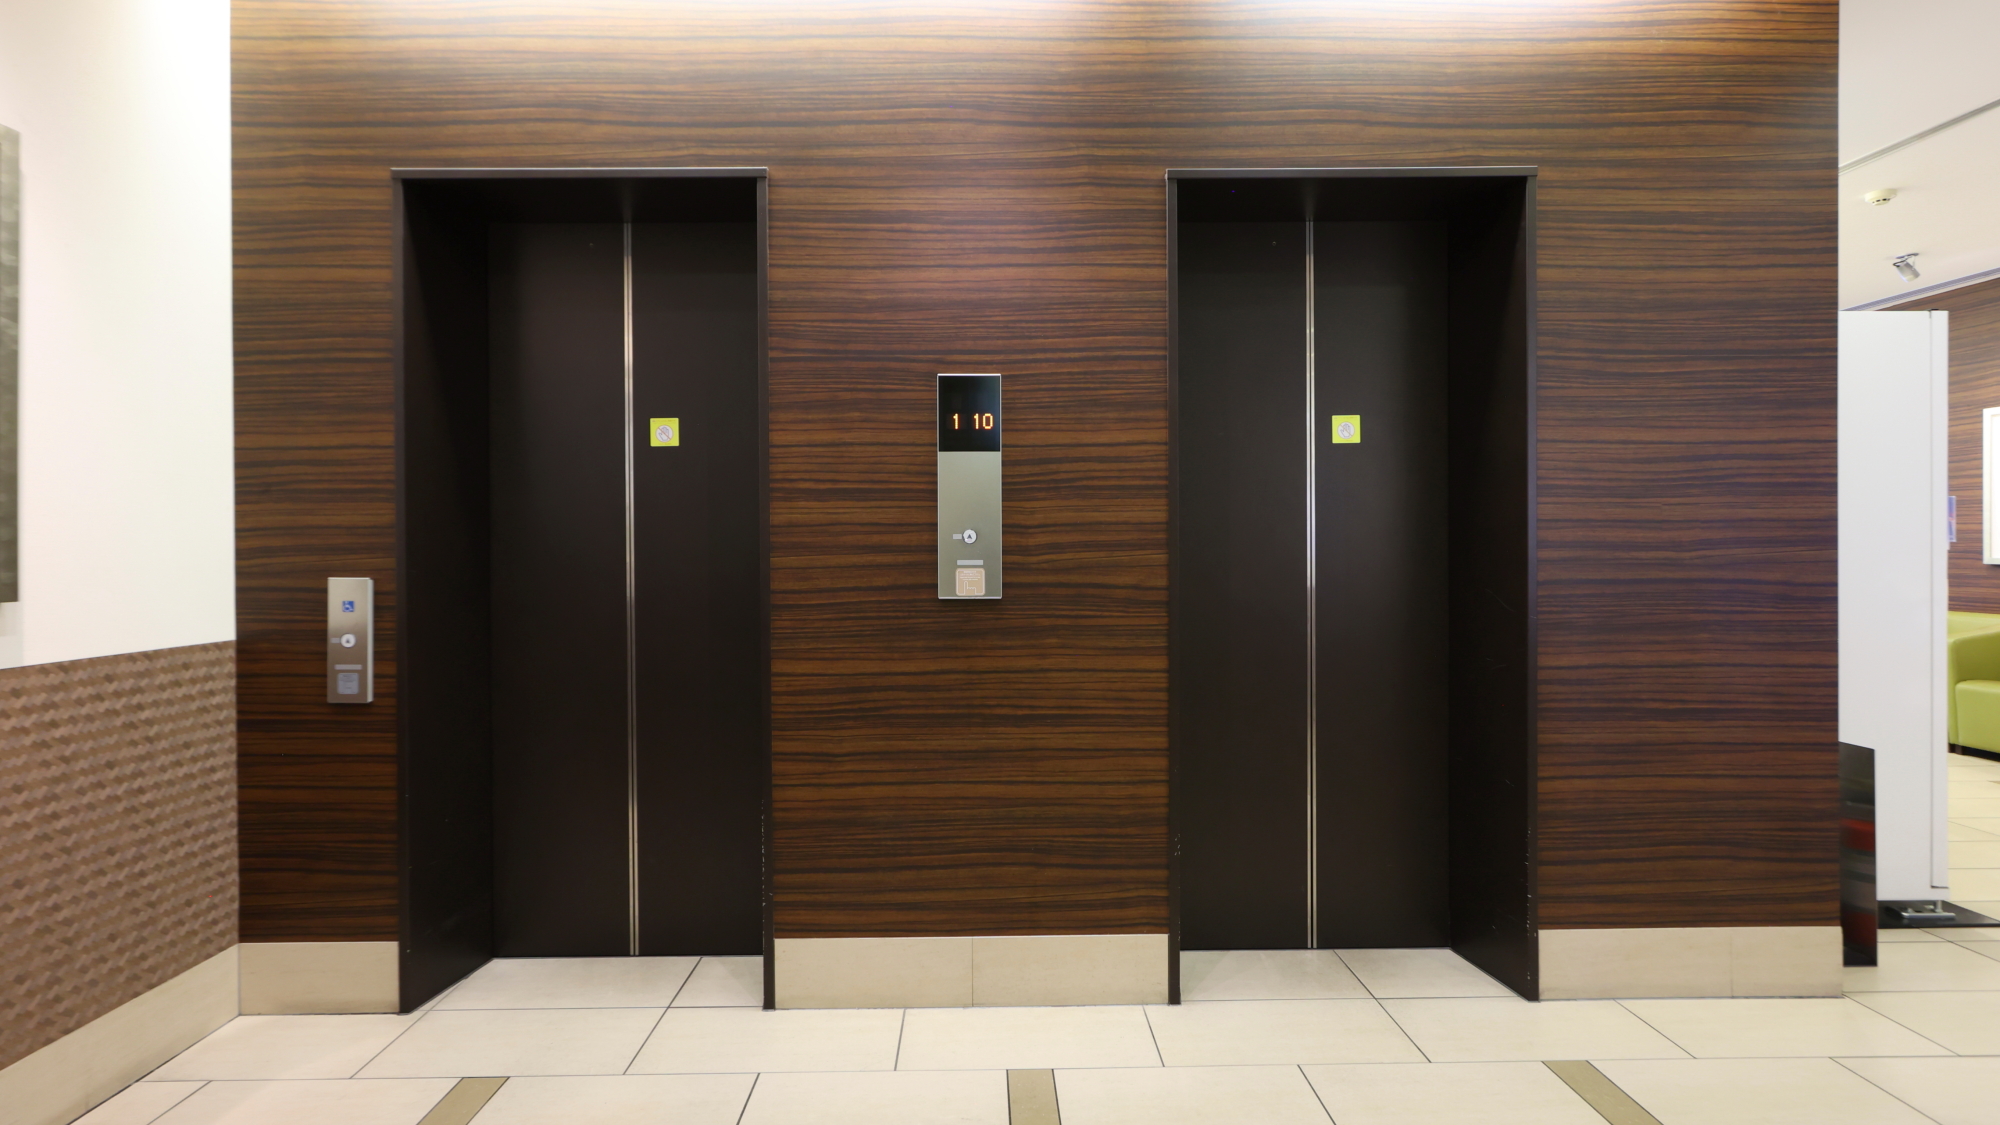 ◆エレベーターは2基あります。